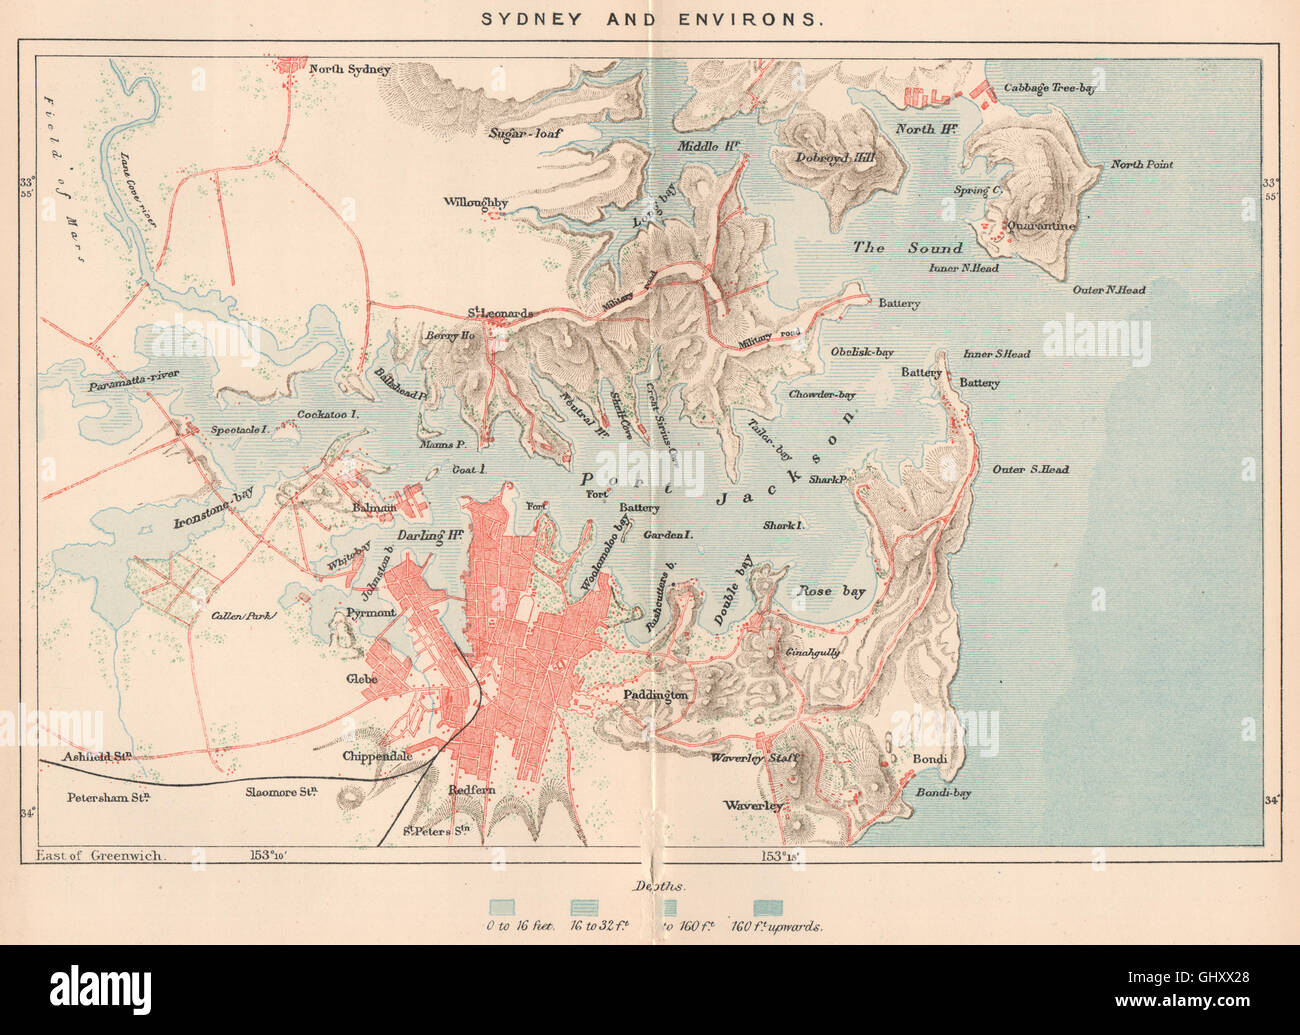 Sydney y sus alrededores. Australia, 1885 mapa antiguo Foto de stock